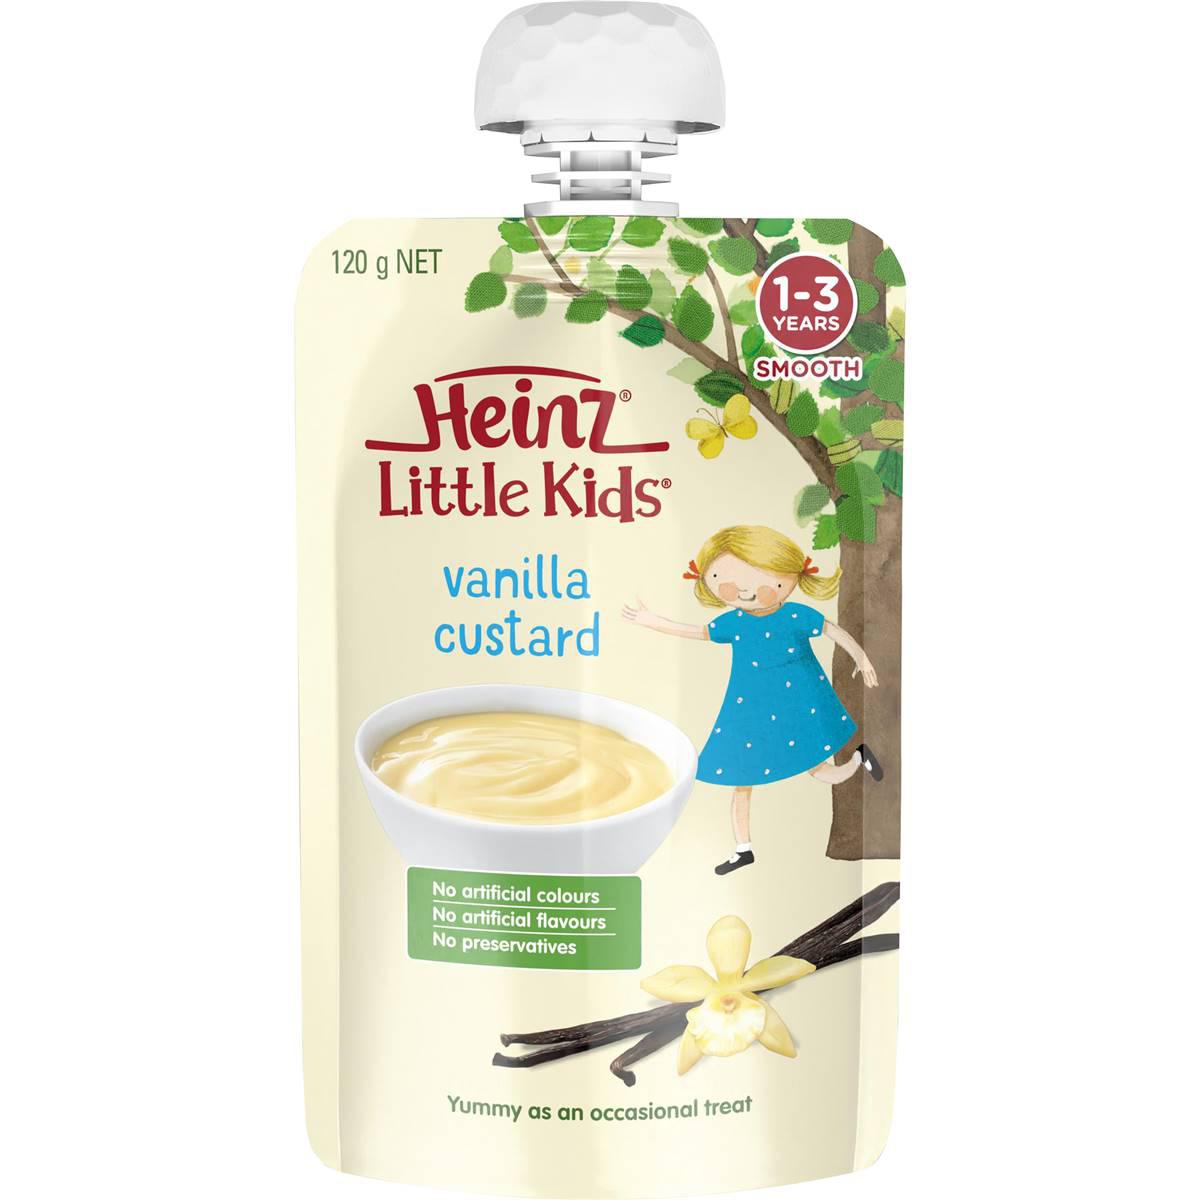 Heinz Little Kids Vanilla Custard Toddler Food Pouch 1-3 Years 120g